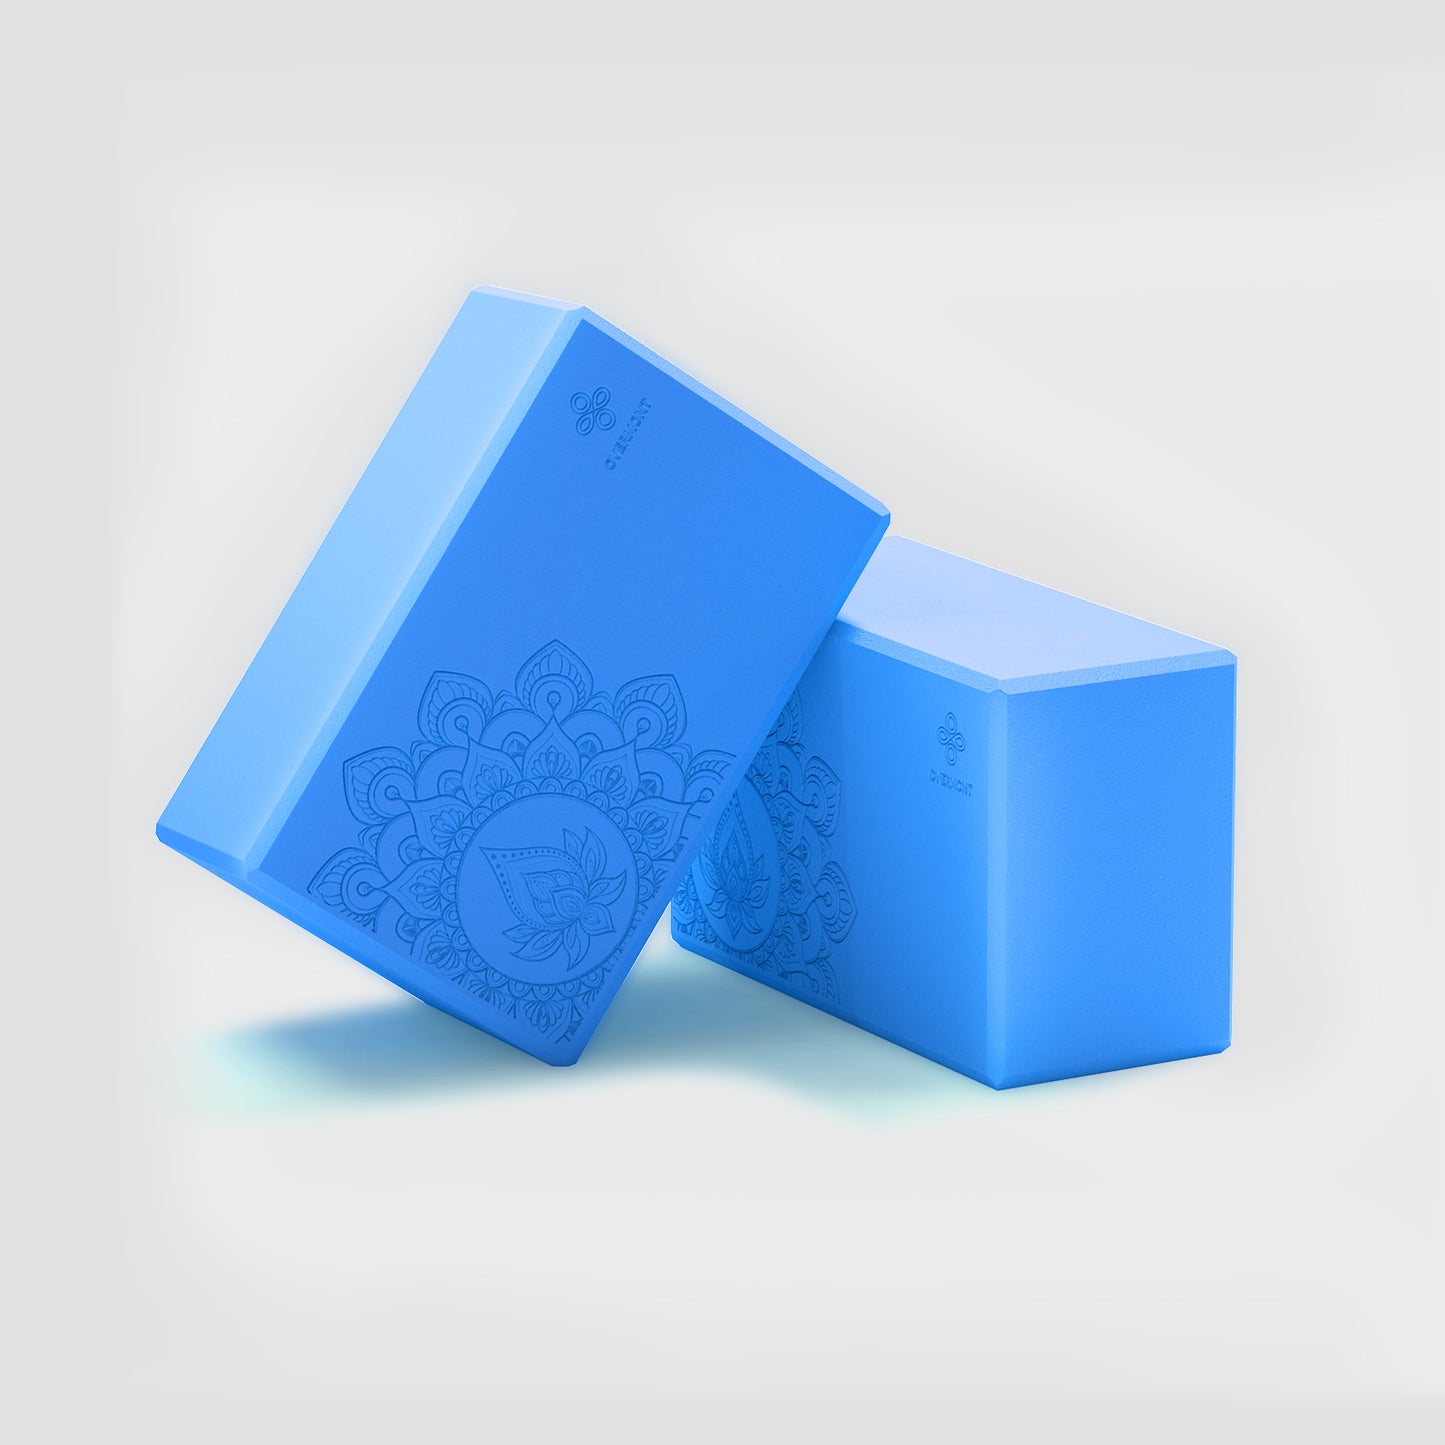 1 pair blue yoga blocks